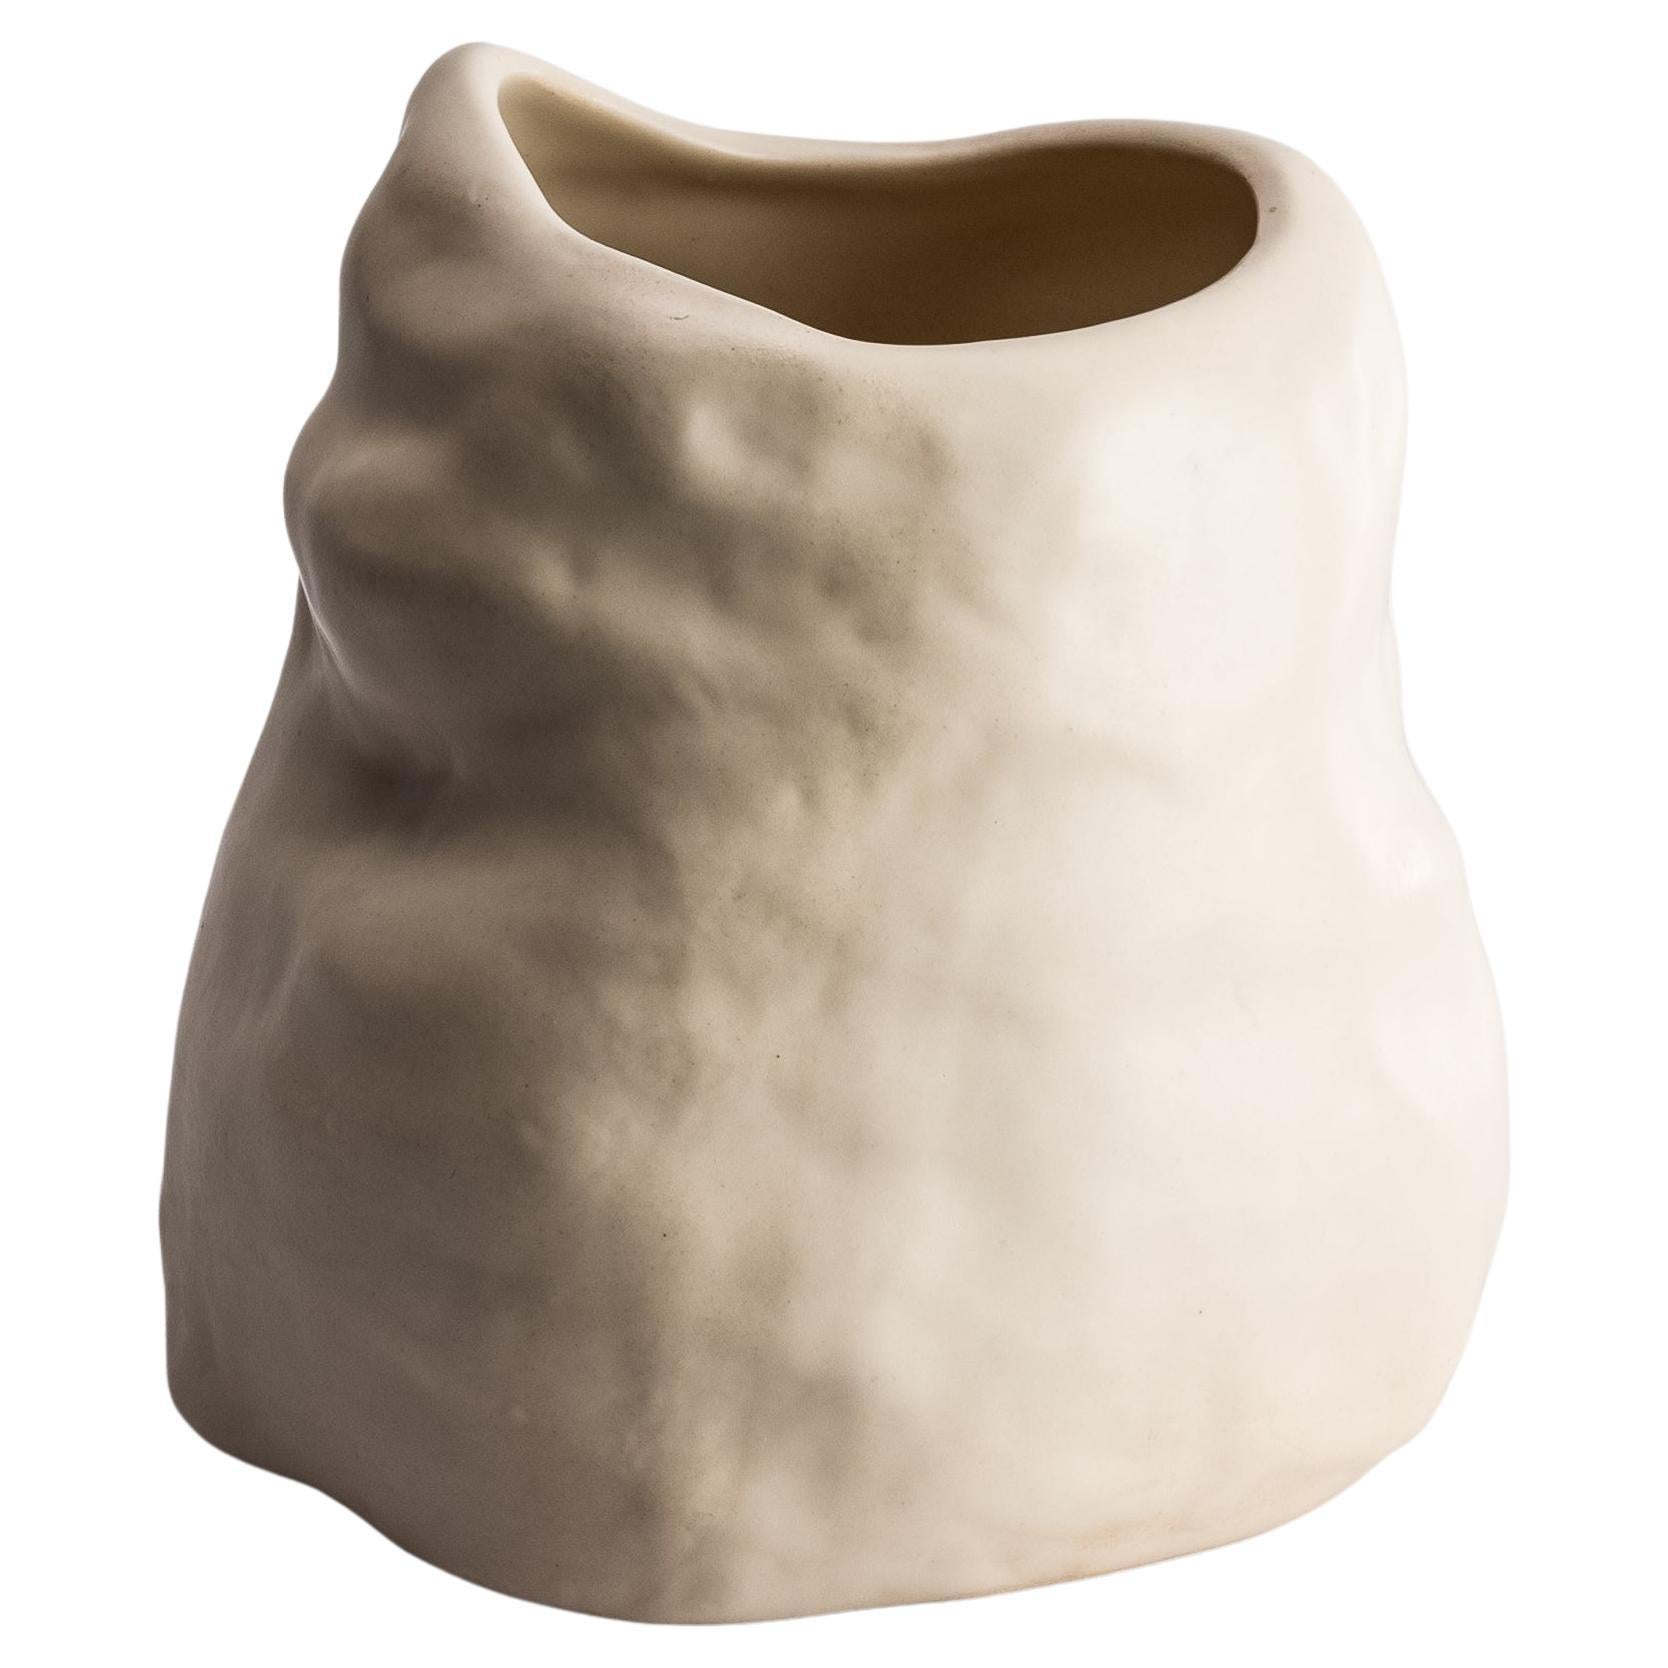 Handmade Ceramic Flower Vase Organic Shape Matte Satin Finish For Sale